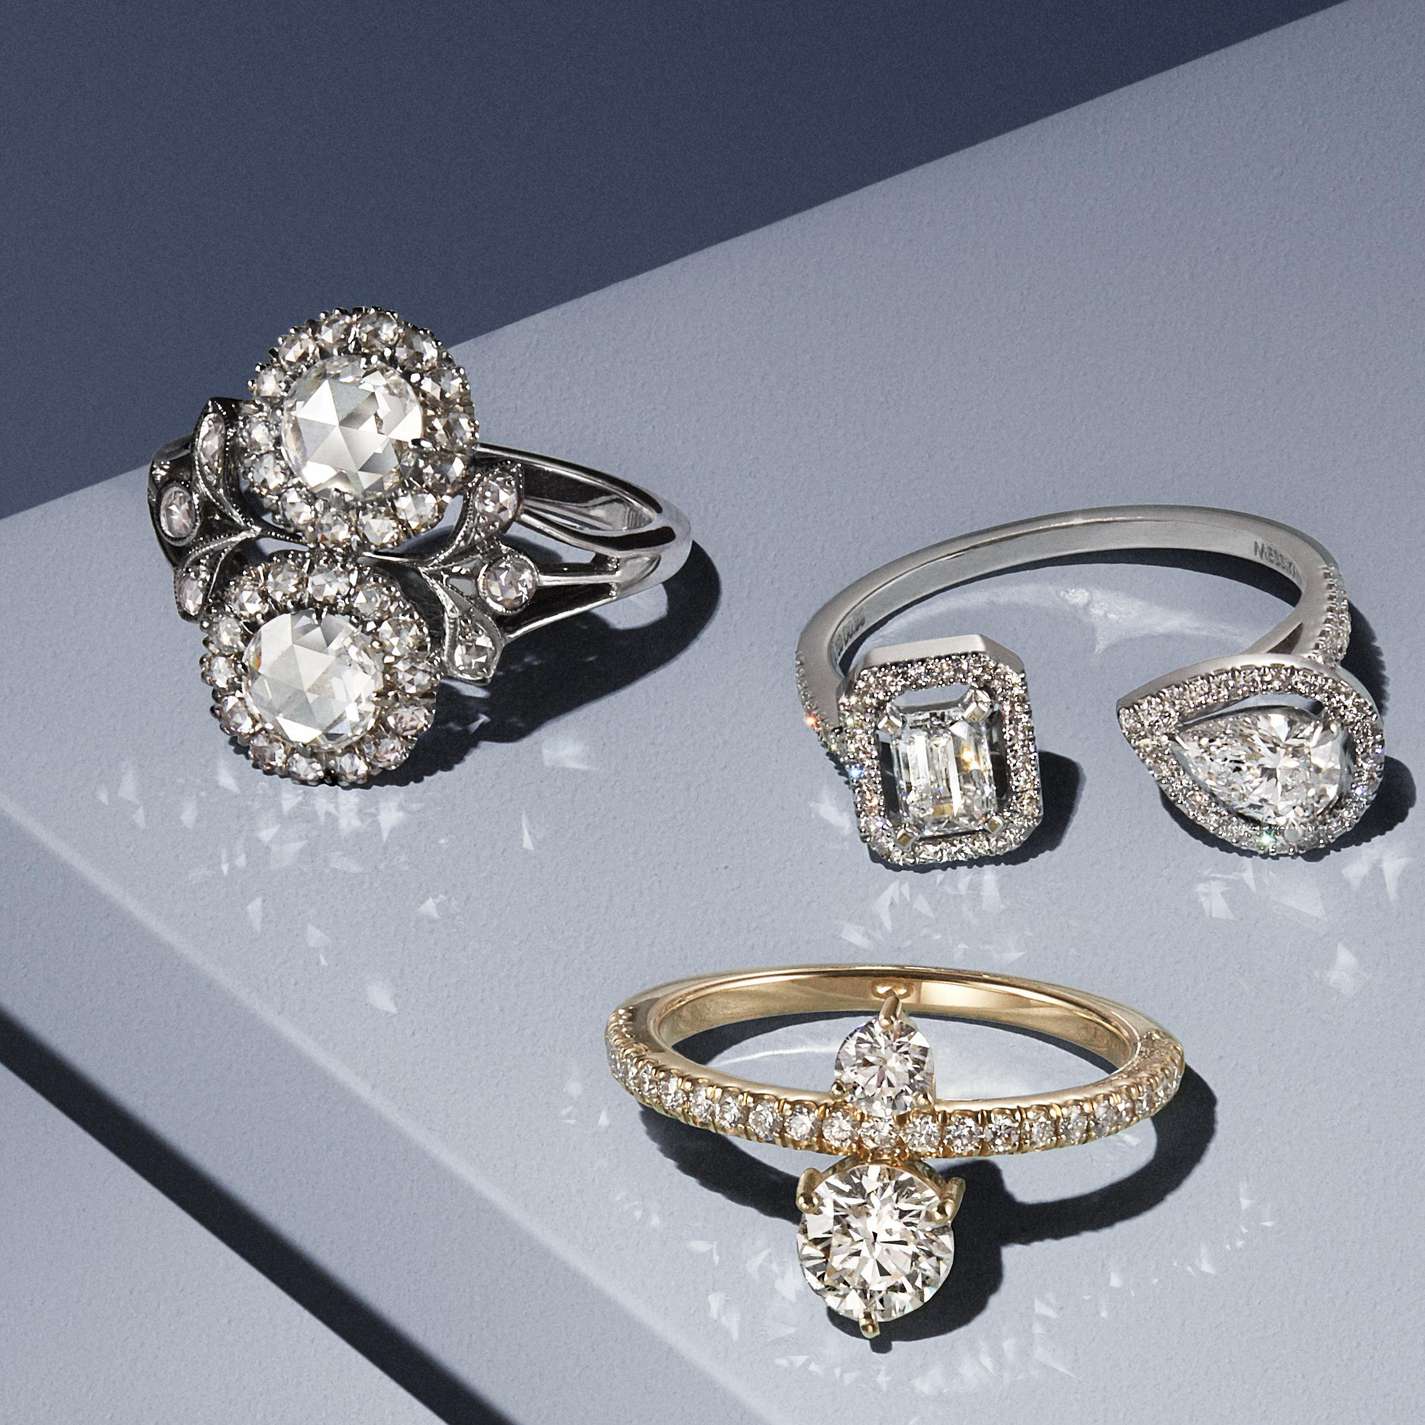 デザイナーが選ぶ美しい2つのダイヤモンドのオーダー婚約指輪20選 | 千葉・柏で結婚指輪をオーダーメイドするならヨーアンドマーレ